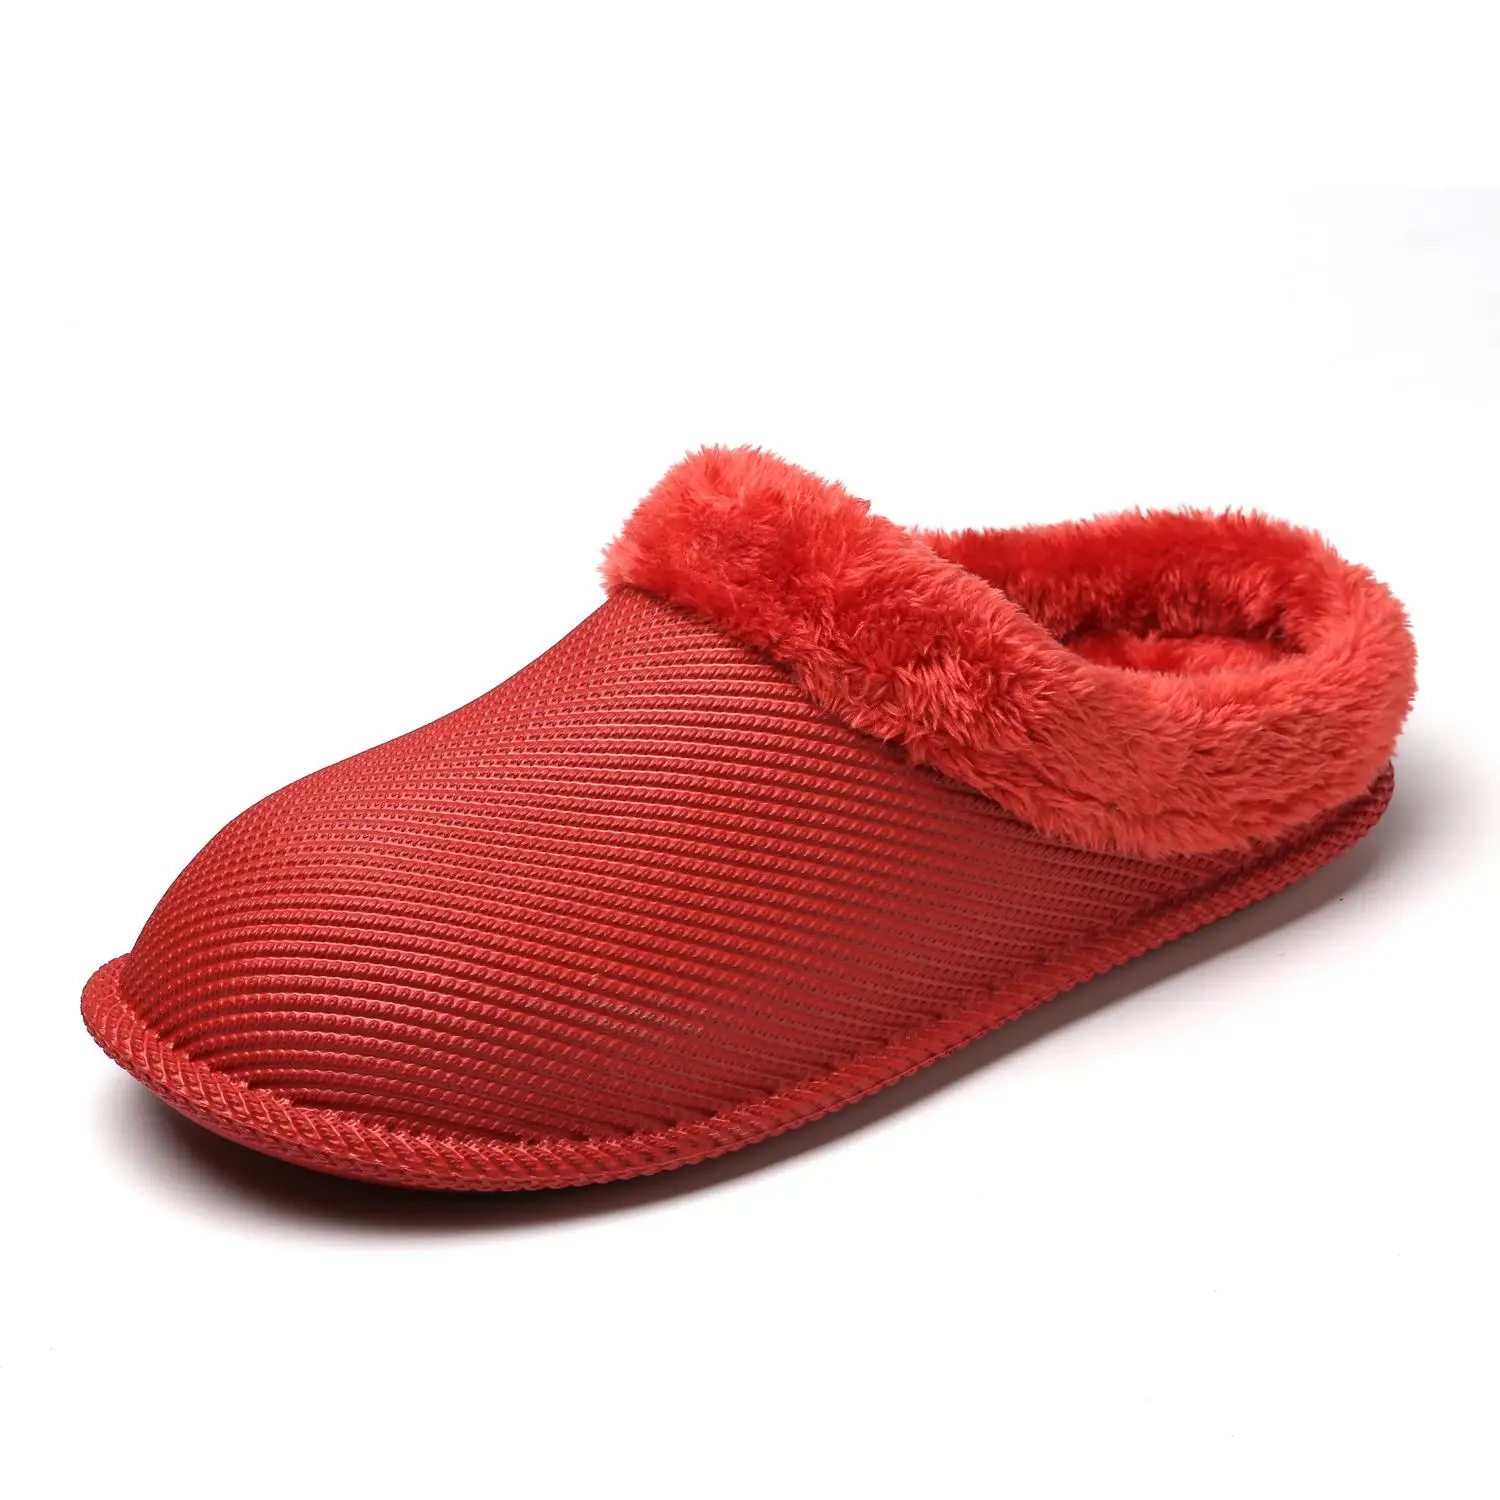 Cajacky зимние Для мужчин тапочки плюшевые теплые тапочки Водонепроницаемый зимняя обувь Домашние тапки большой Размеры; большие размеры 36-47 пара шлепанцы обувь - Цвет: red